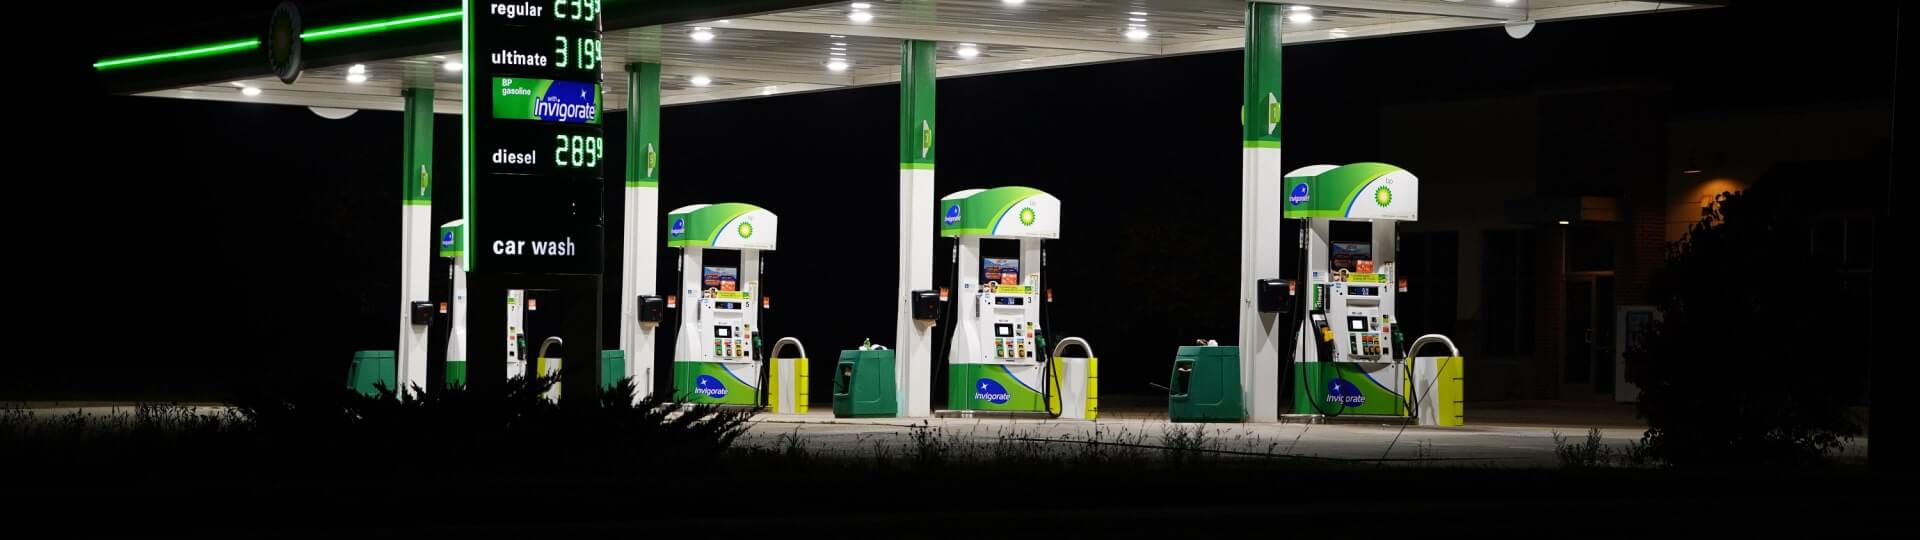 Ropný gigant BP více než zdvojnásobil zisk